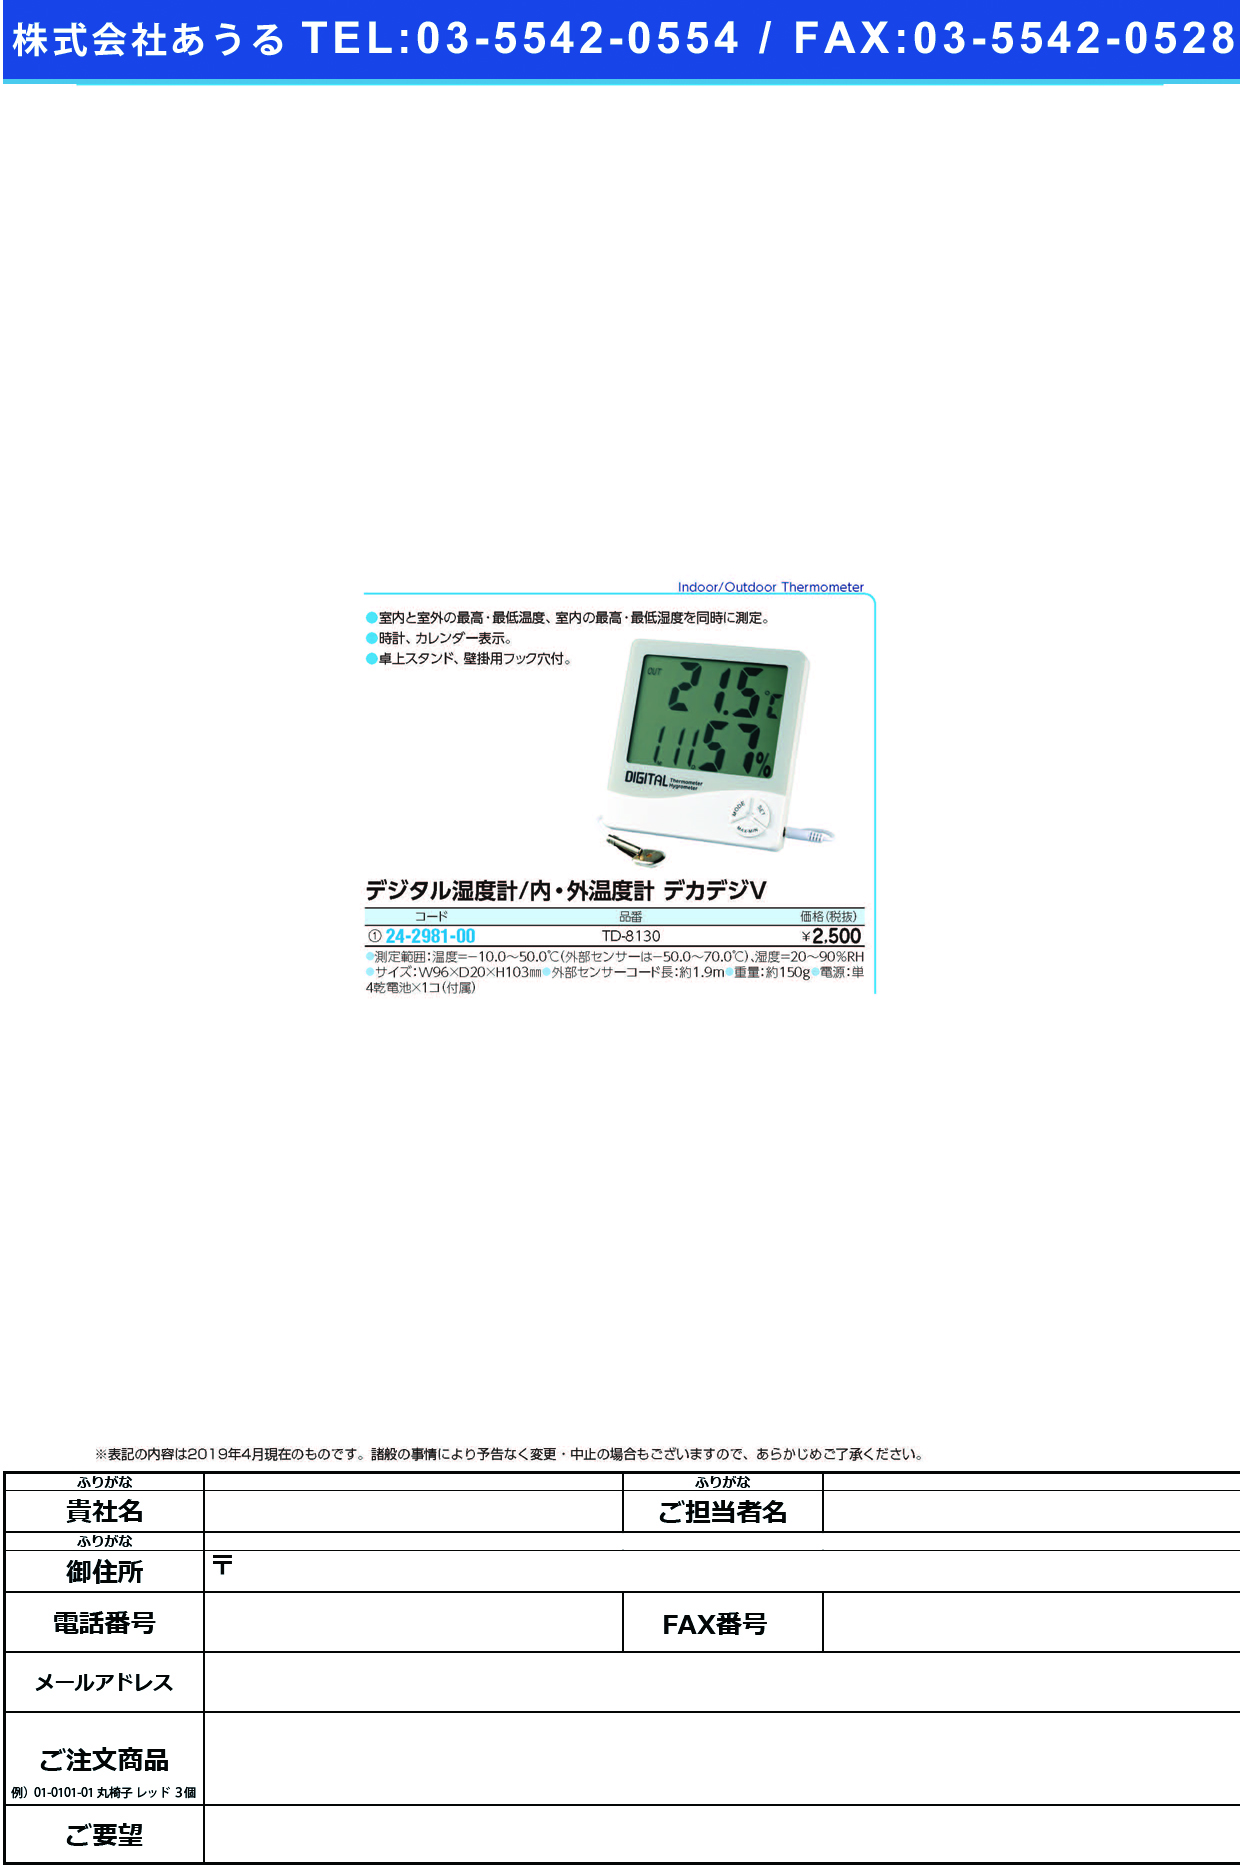 (24-2981-00)デカデジⅤ（デジタル湿度／内外温度計 TD-8130 ﾃﾞｶﾃﾞｼﾞVﾃﾞｼﾞﾀﾙｵﾝｼﾂﾄﾞ【1個単位】【2019年カタログ商品】